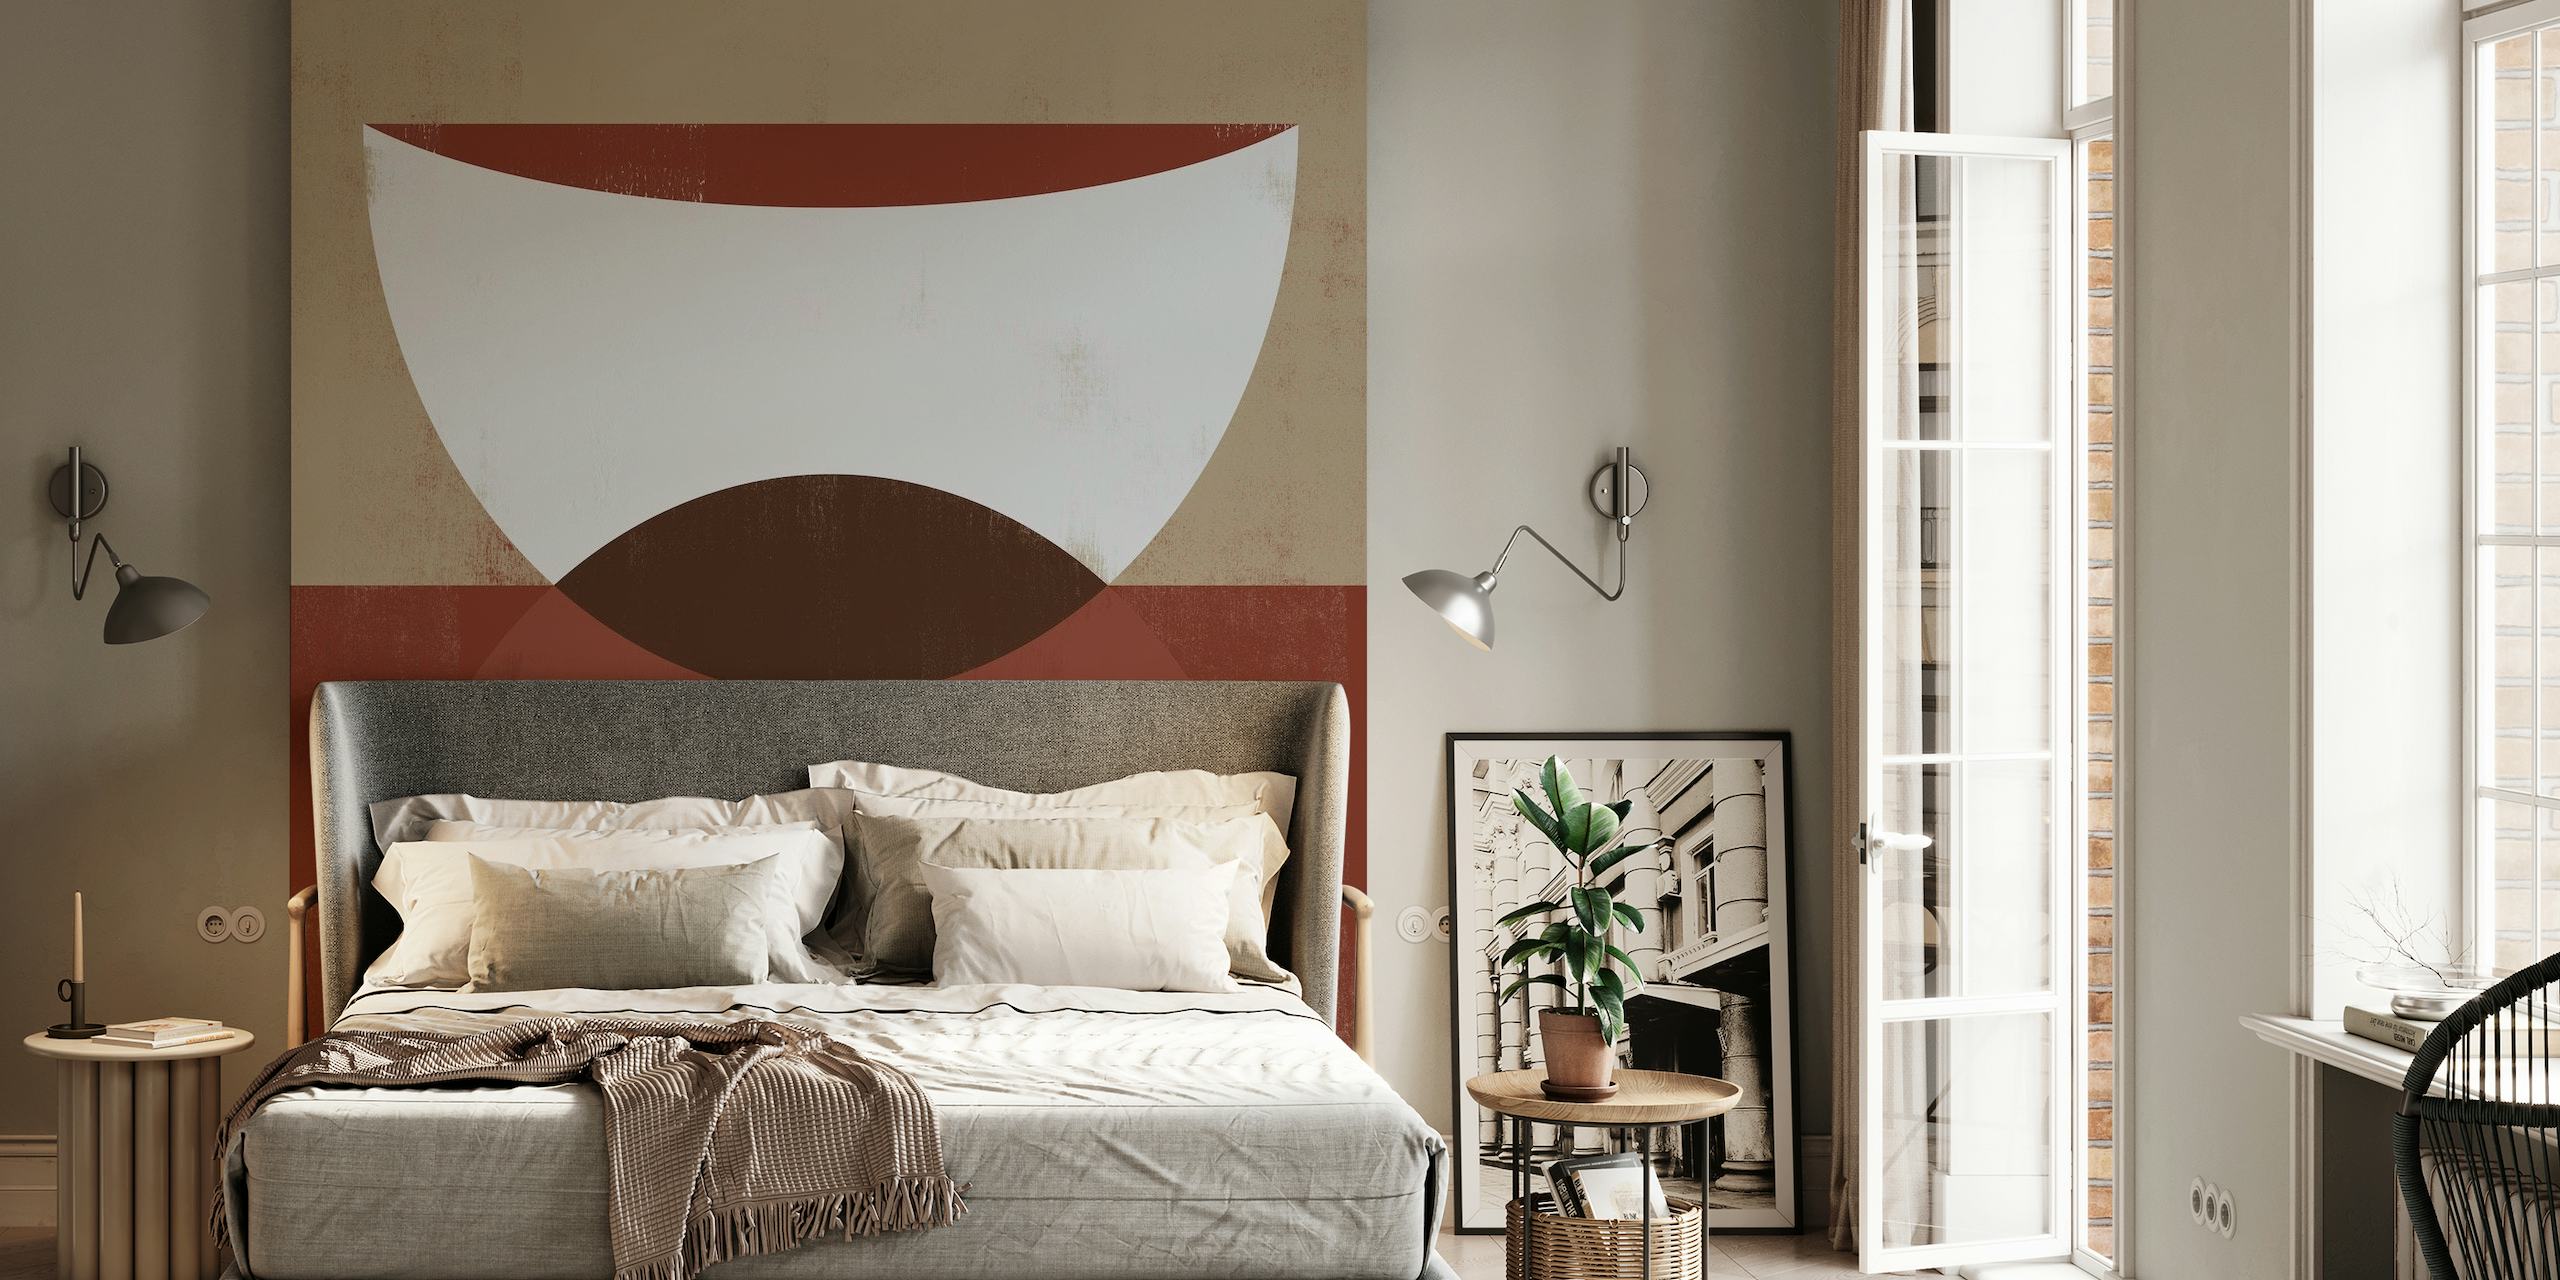 SHE Rouge 4 mural de pared geométrico abstracto en crema, marrón y granate